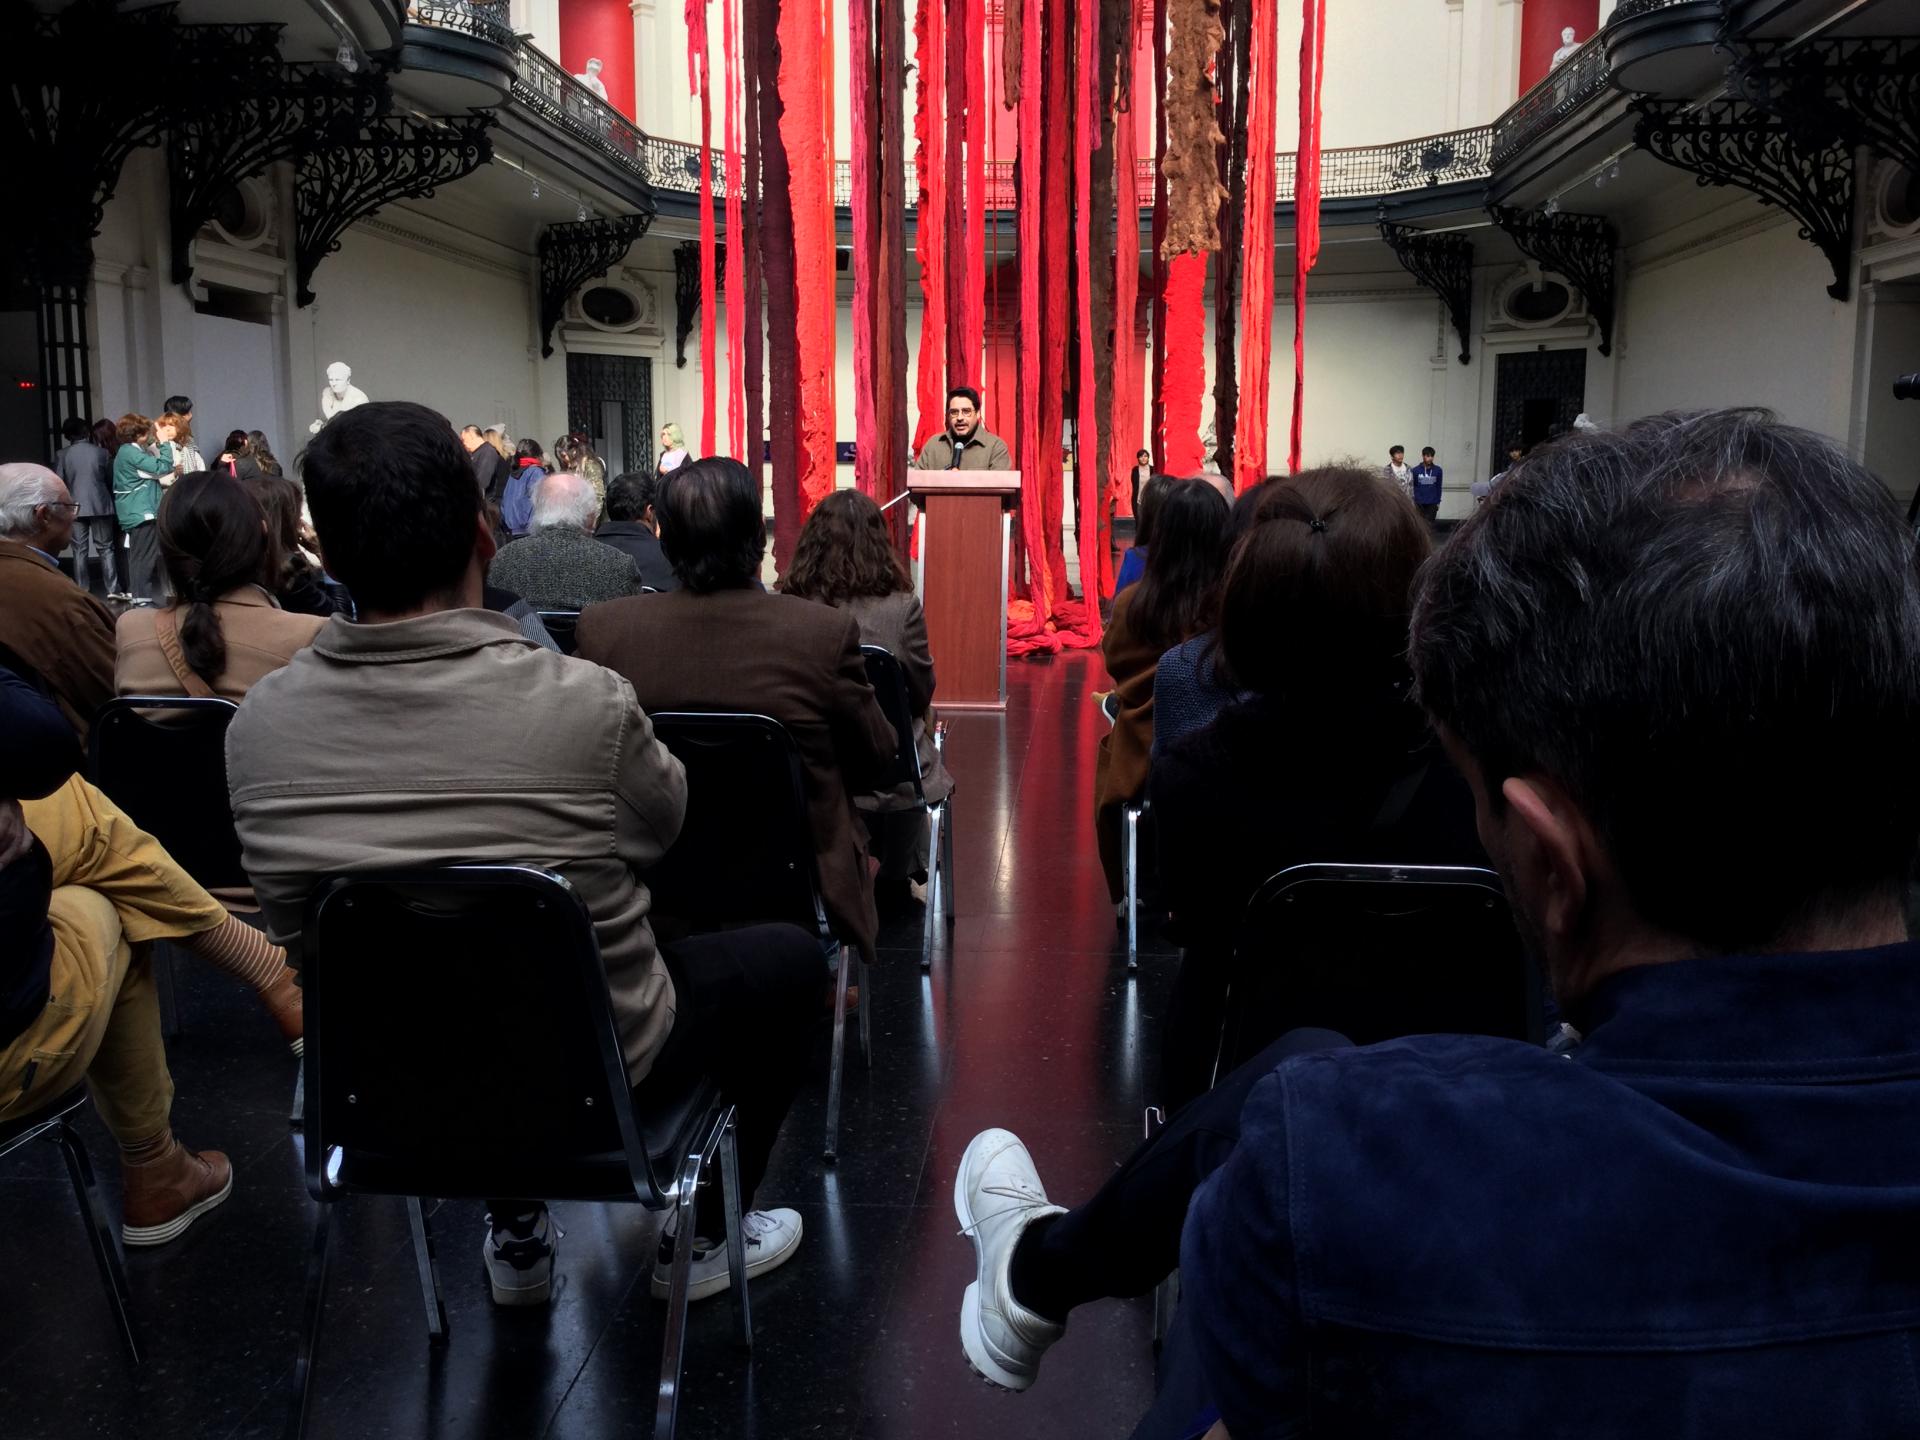 El curador Sebastián Vidal Valenzuela dando un discurso, detrás de él se pueden ver telas colgadas de colores rojo y café. Frente a él hay personas sentadas observandolo.